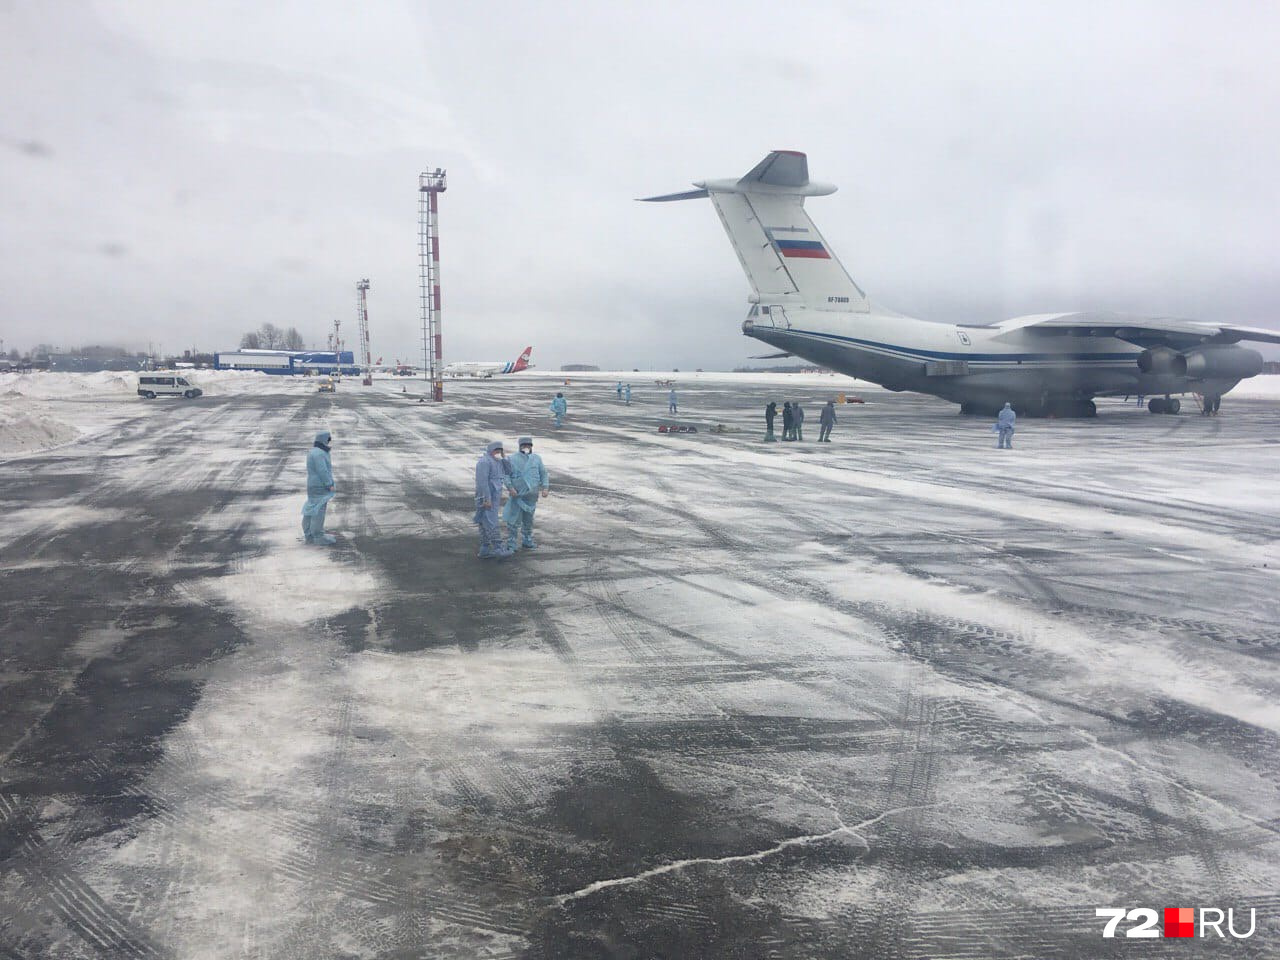 Специалисты в средствах защиты готовились встретить Ил-76 с пассажирами из Китая на борту